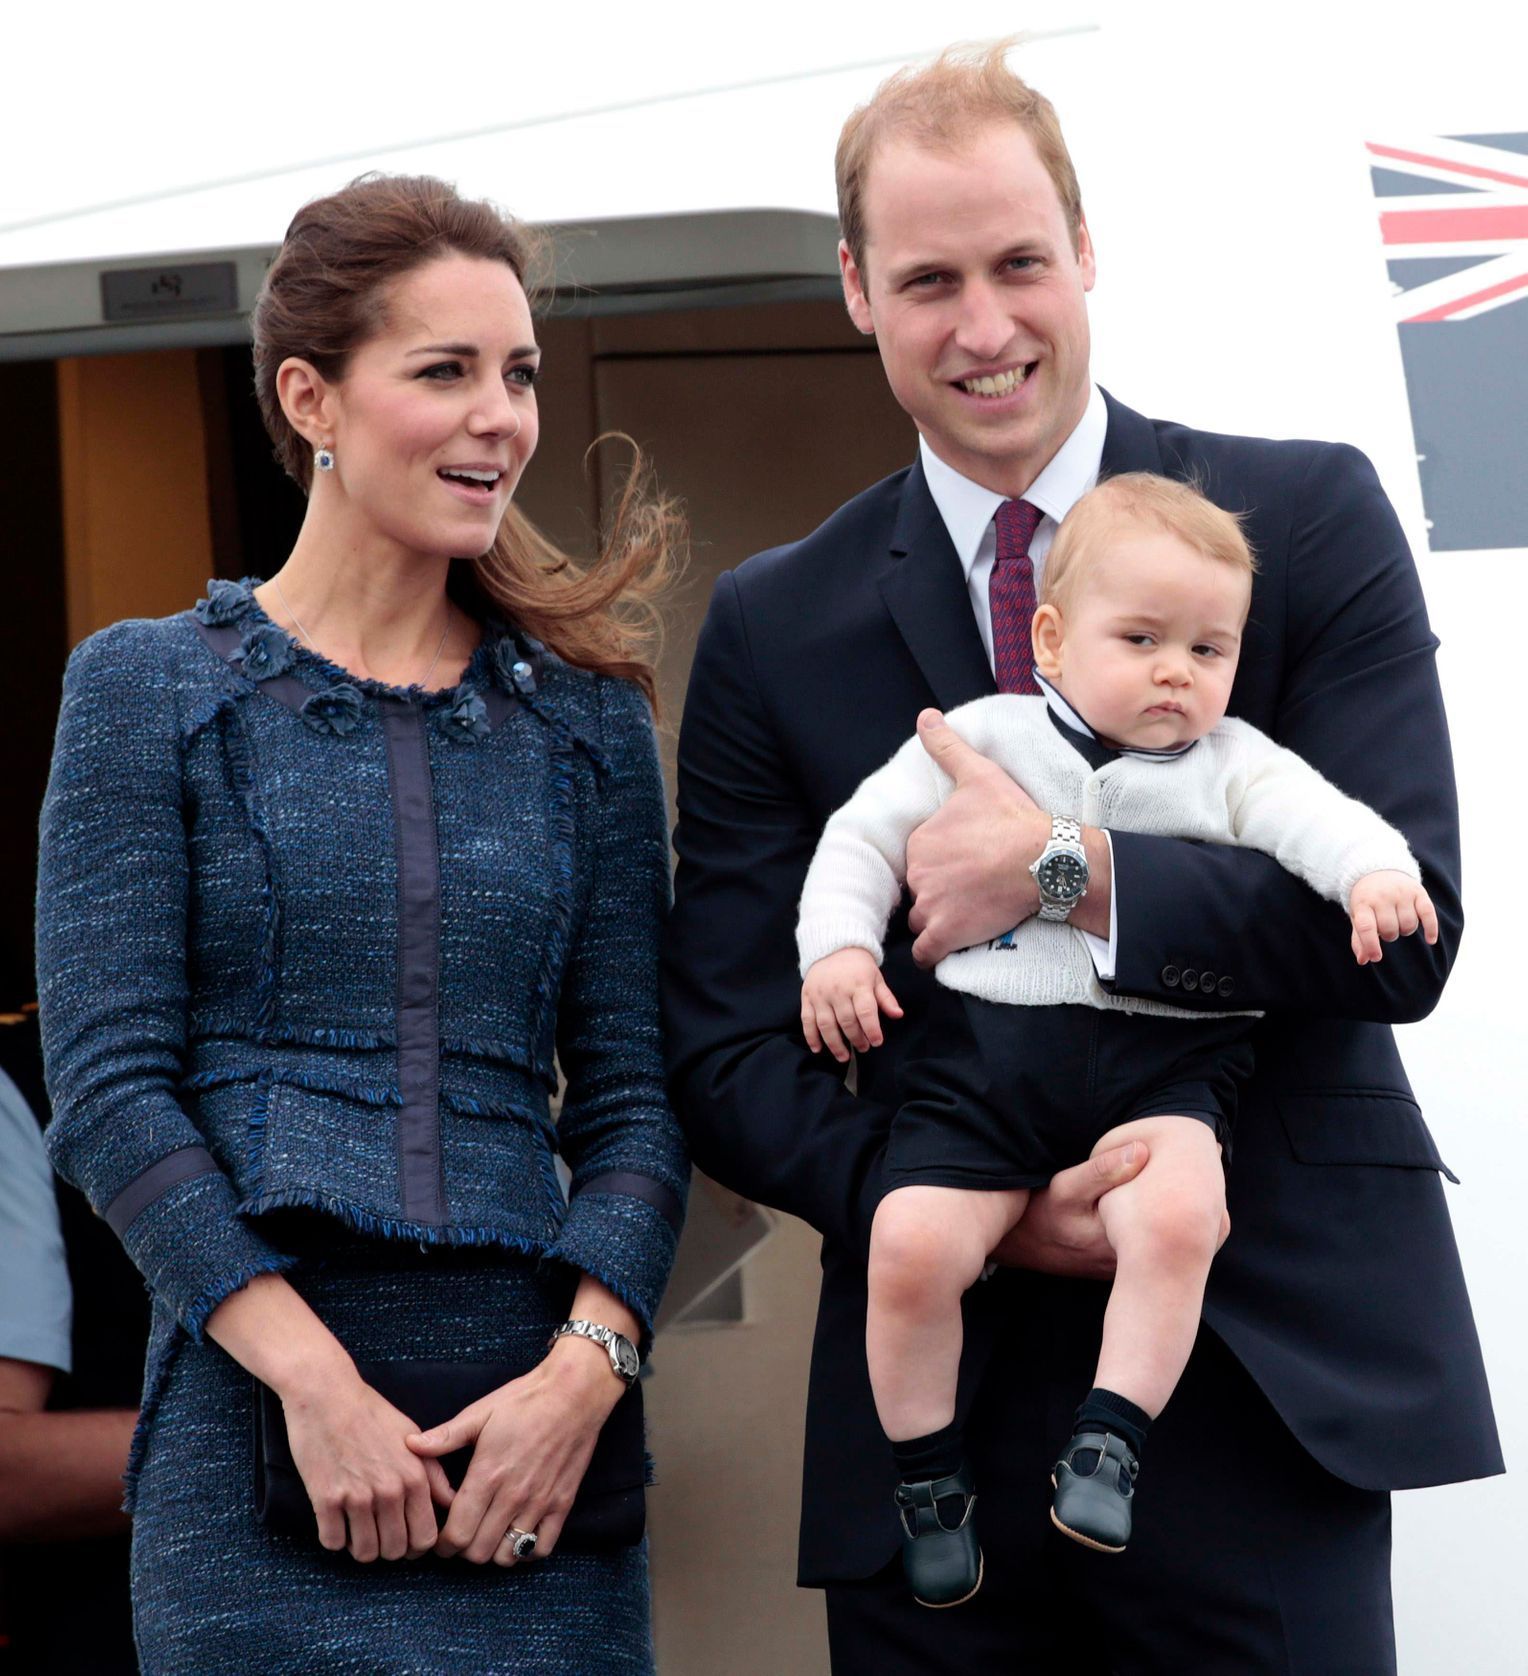 Vévodkyně Catherine, princ William a jejich syn George odlétají z Nového Zélandu